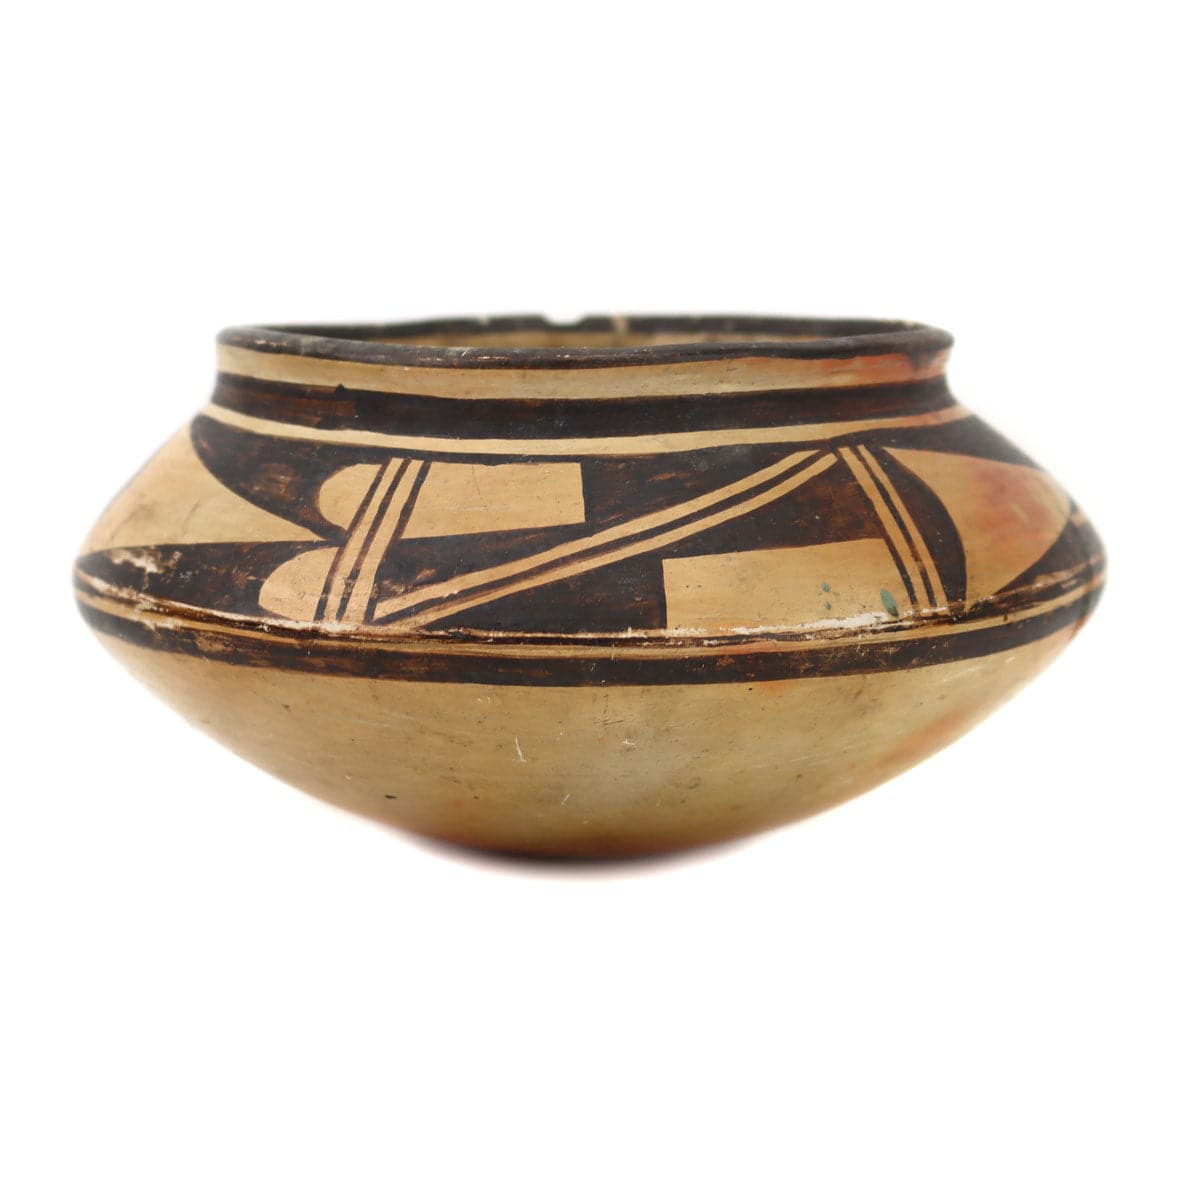 Hopi Polychrome Jar c. 1920s, 3.25" x 6" (P3513)